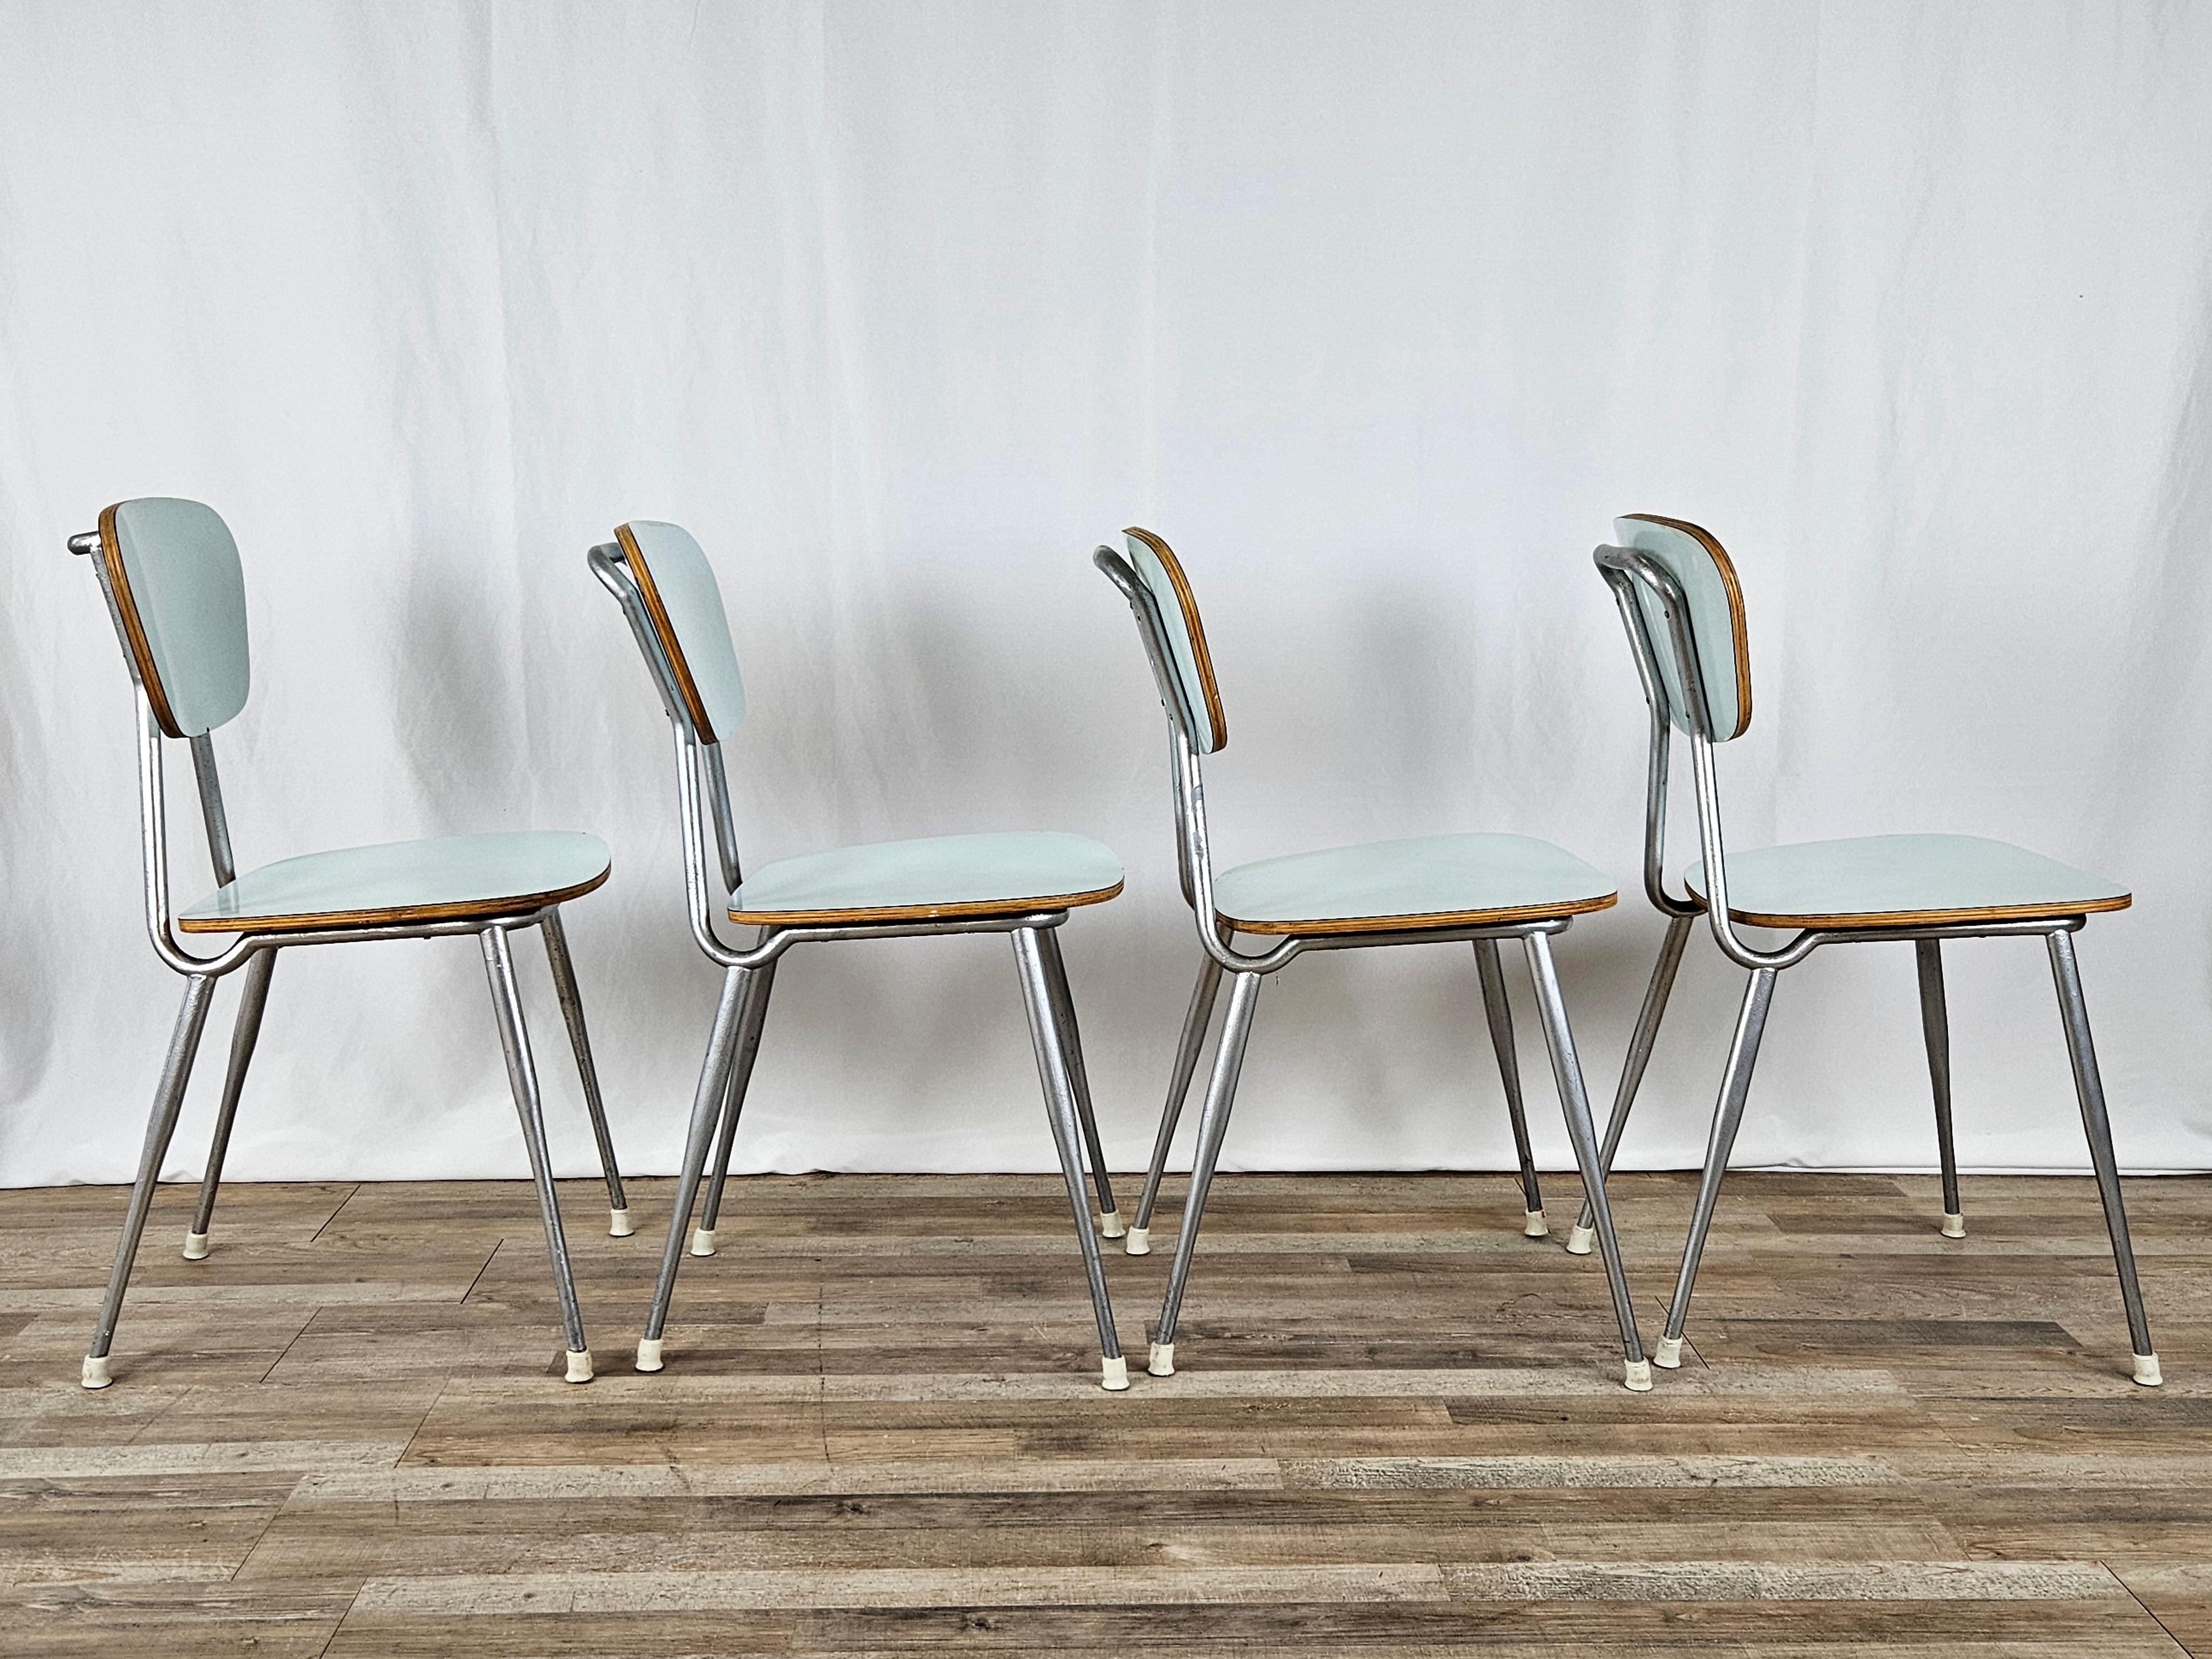 Set di moderne e colorate sedie in formica con struttura in ferro, produzione italiana primi anni '70.

Design moderno e funzionale, si accostano ad ogni genere di arredamento dal modero all'antico.

Normali segni dovuti all'età e all'utilizzo.